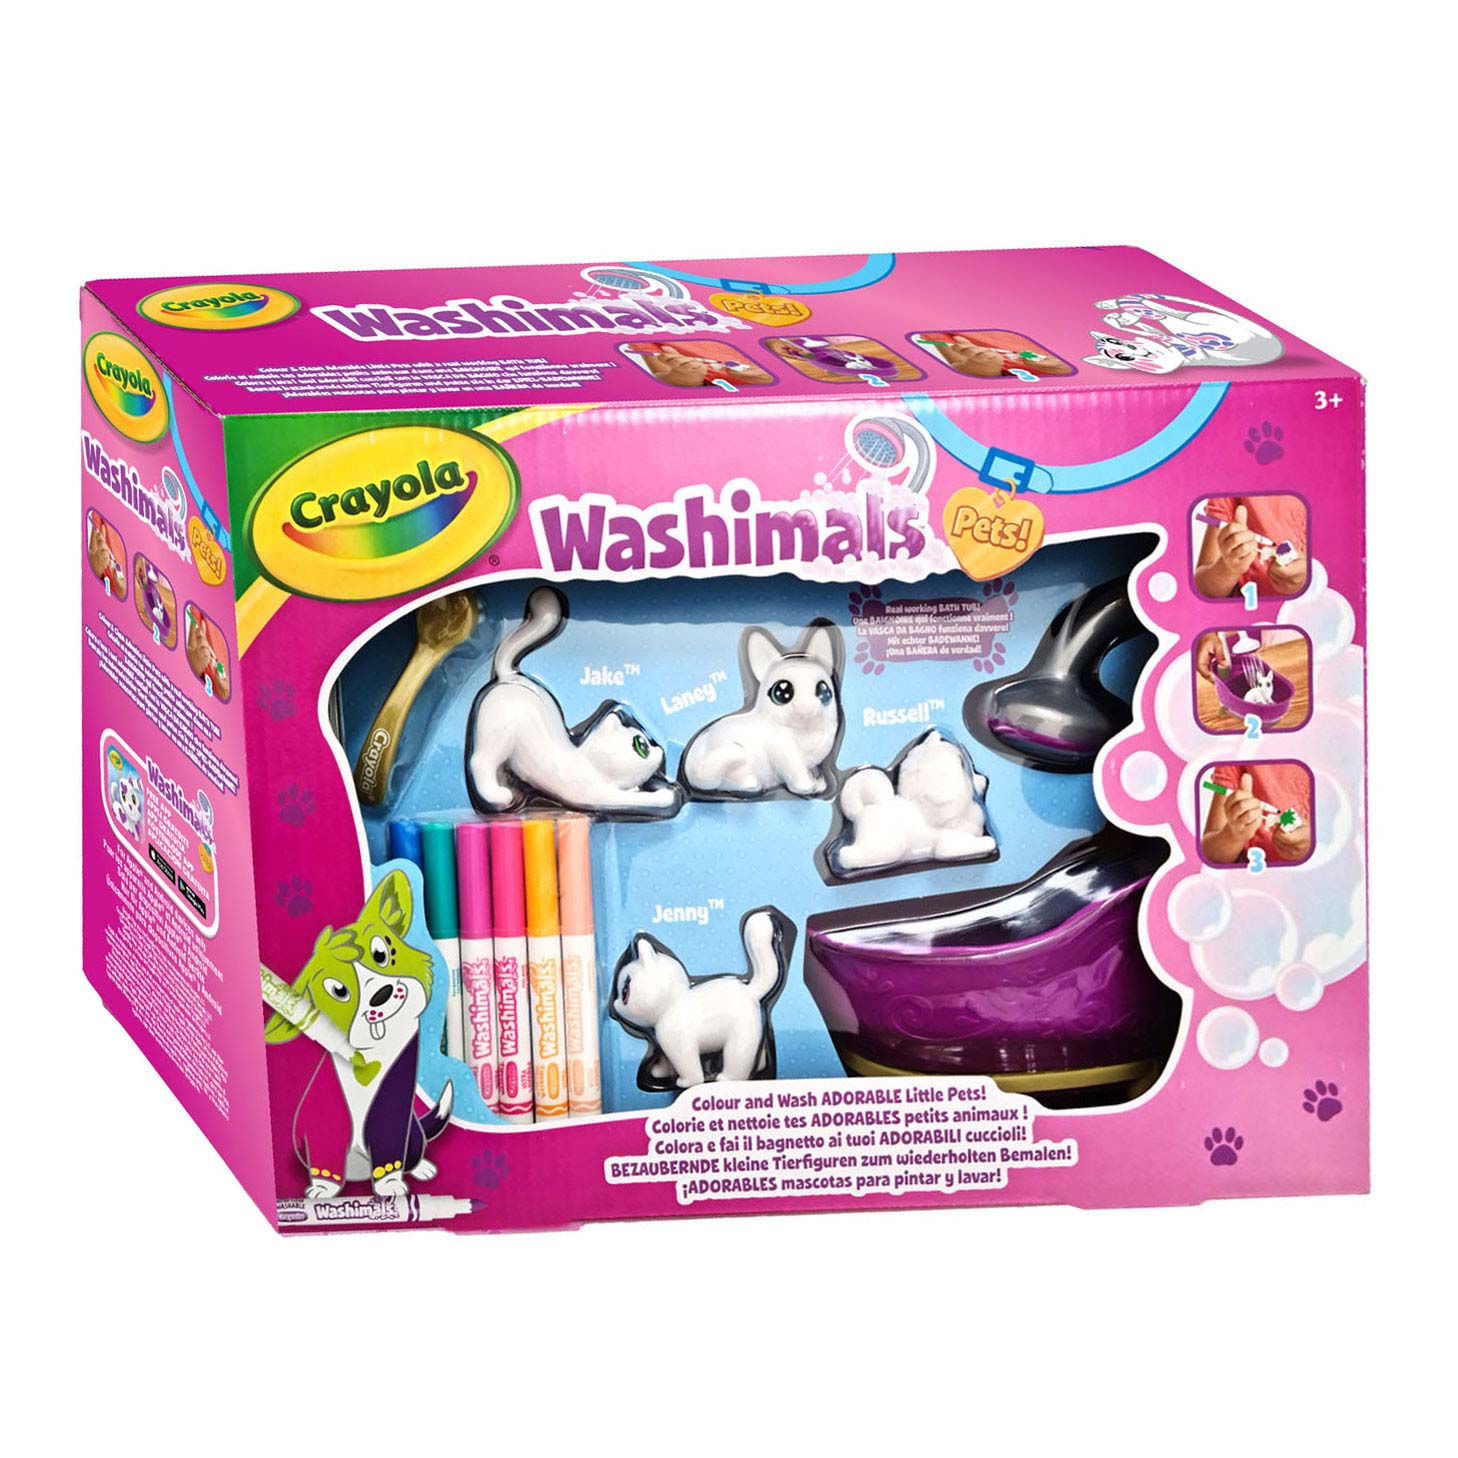 Crayola Washimals Washable Animals Playset - Dog and cat 